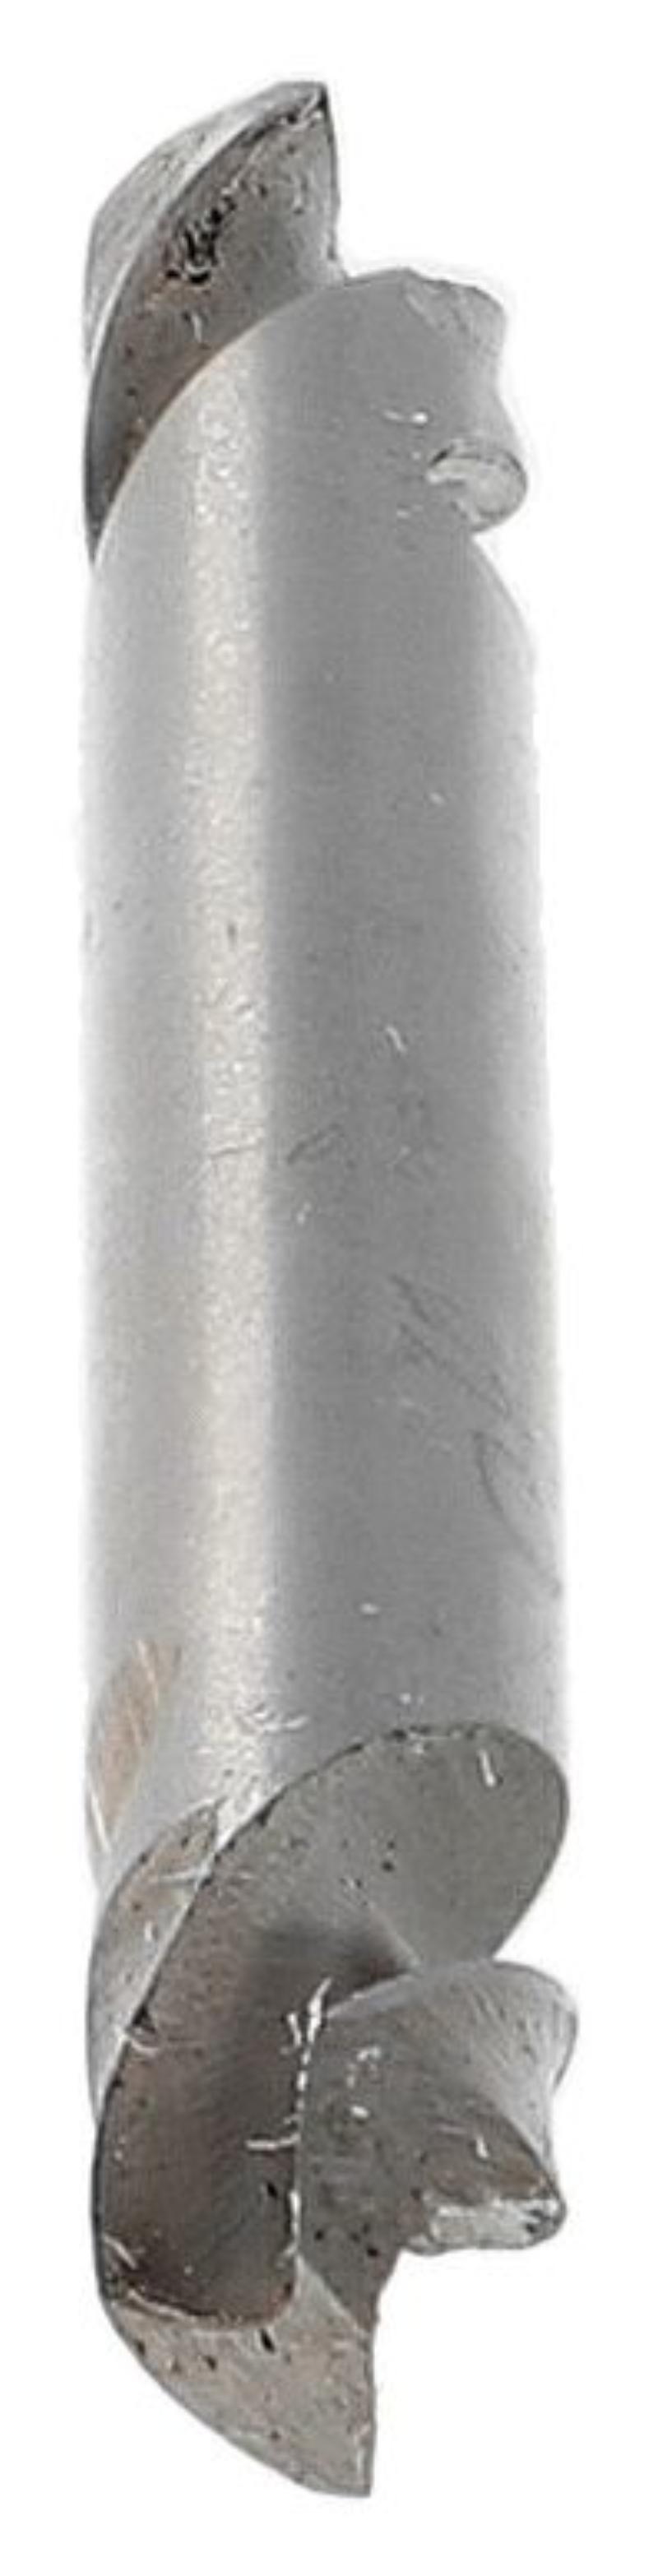 Heller plate drill HSS double drill - pop rivet, 10 pcs